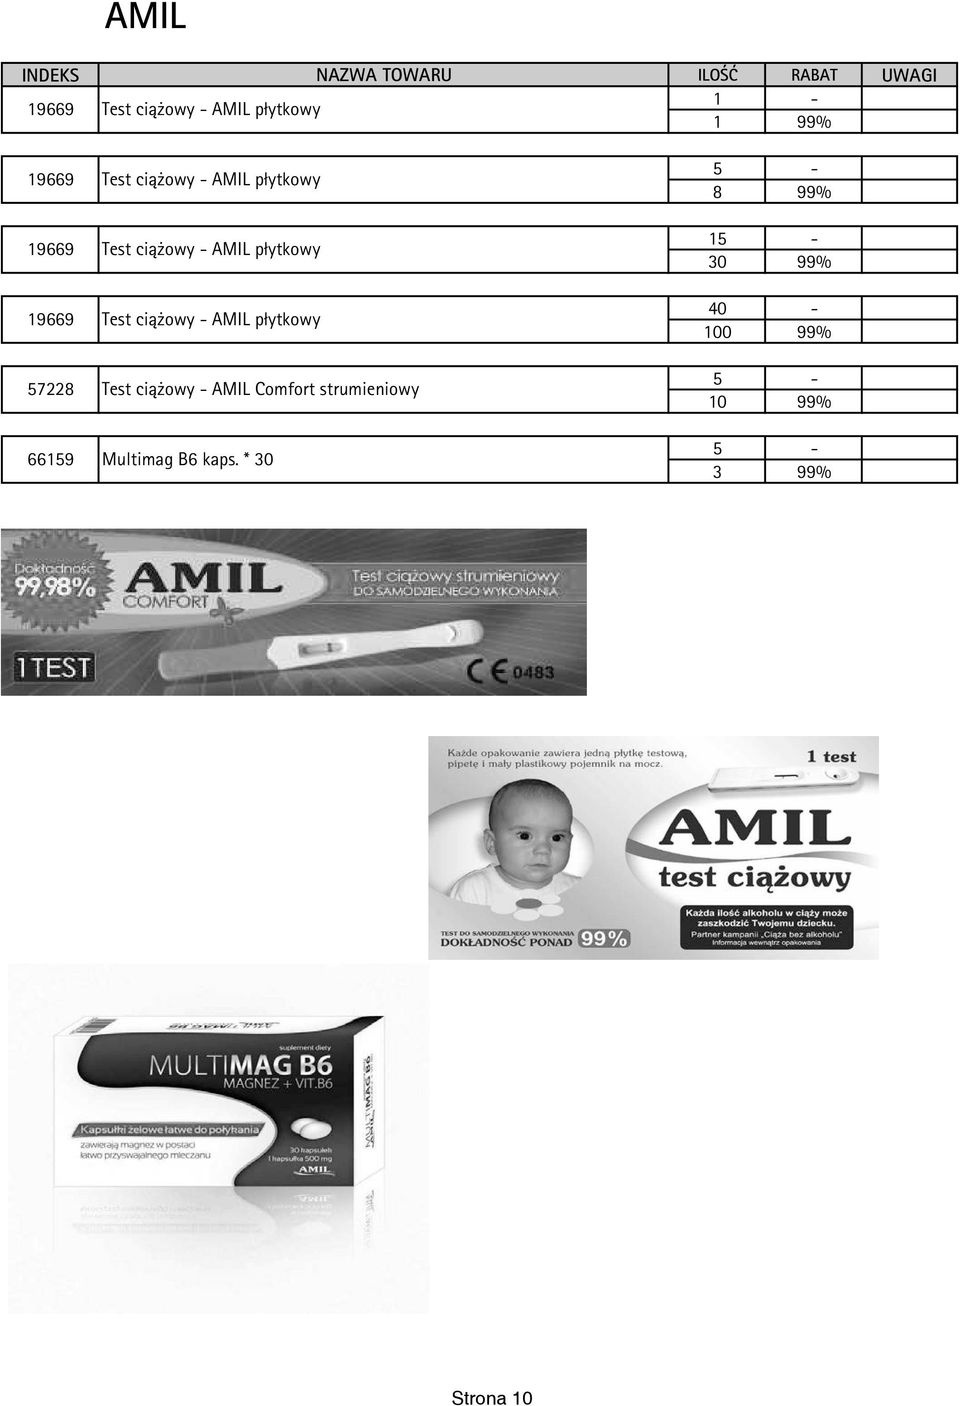 AMIL płytkowy 57228 Test ciążowy - AMIL Comfort strumieniowy 5-8 99%